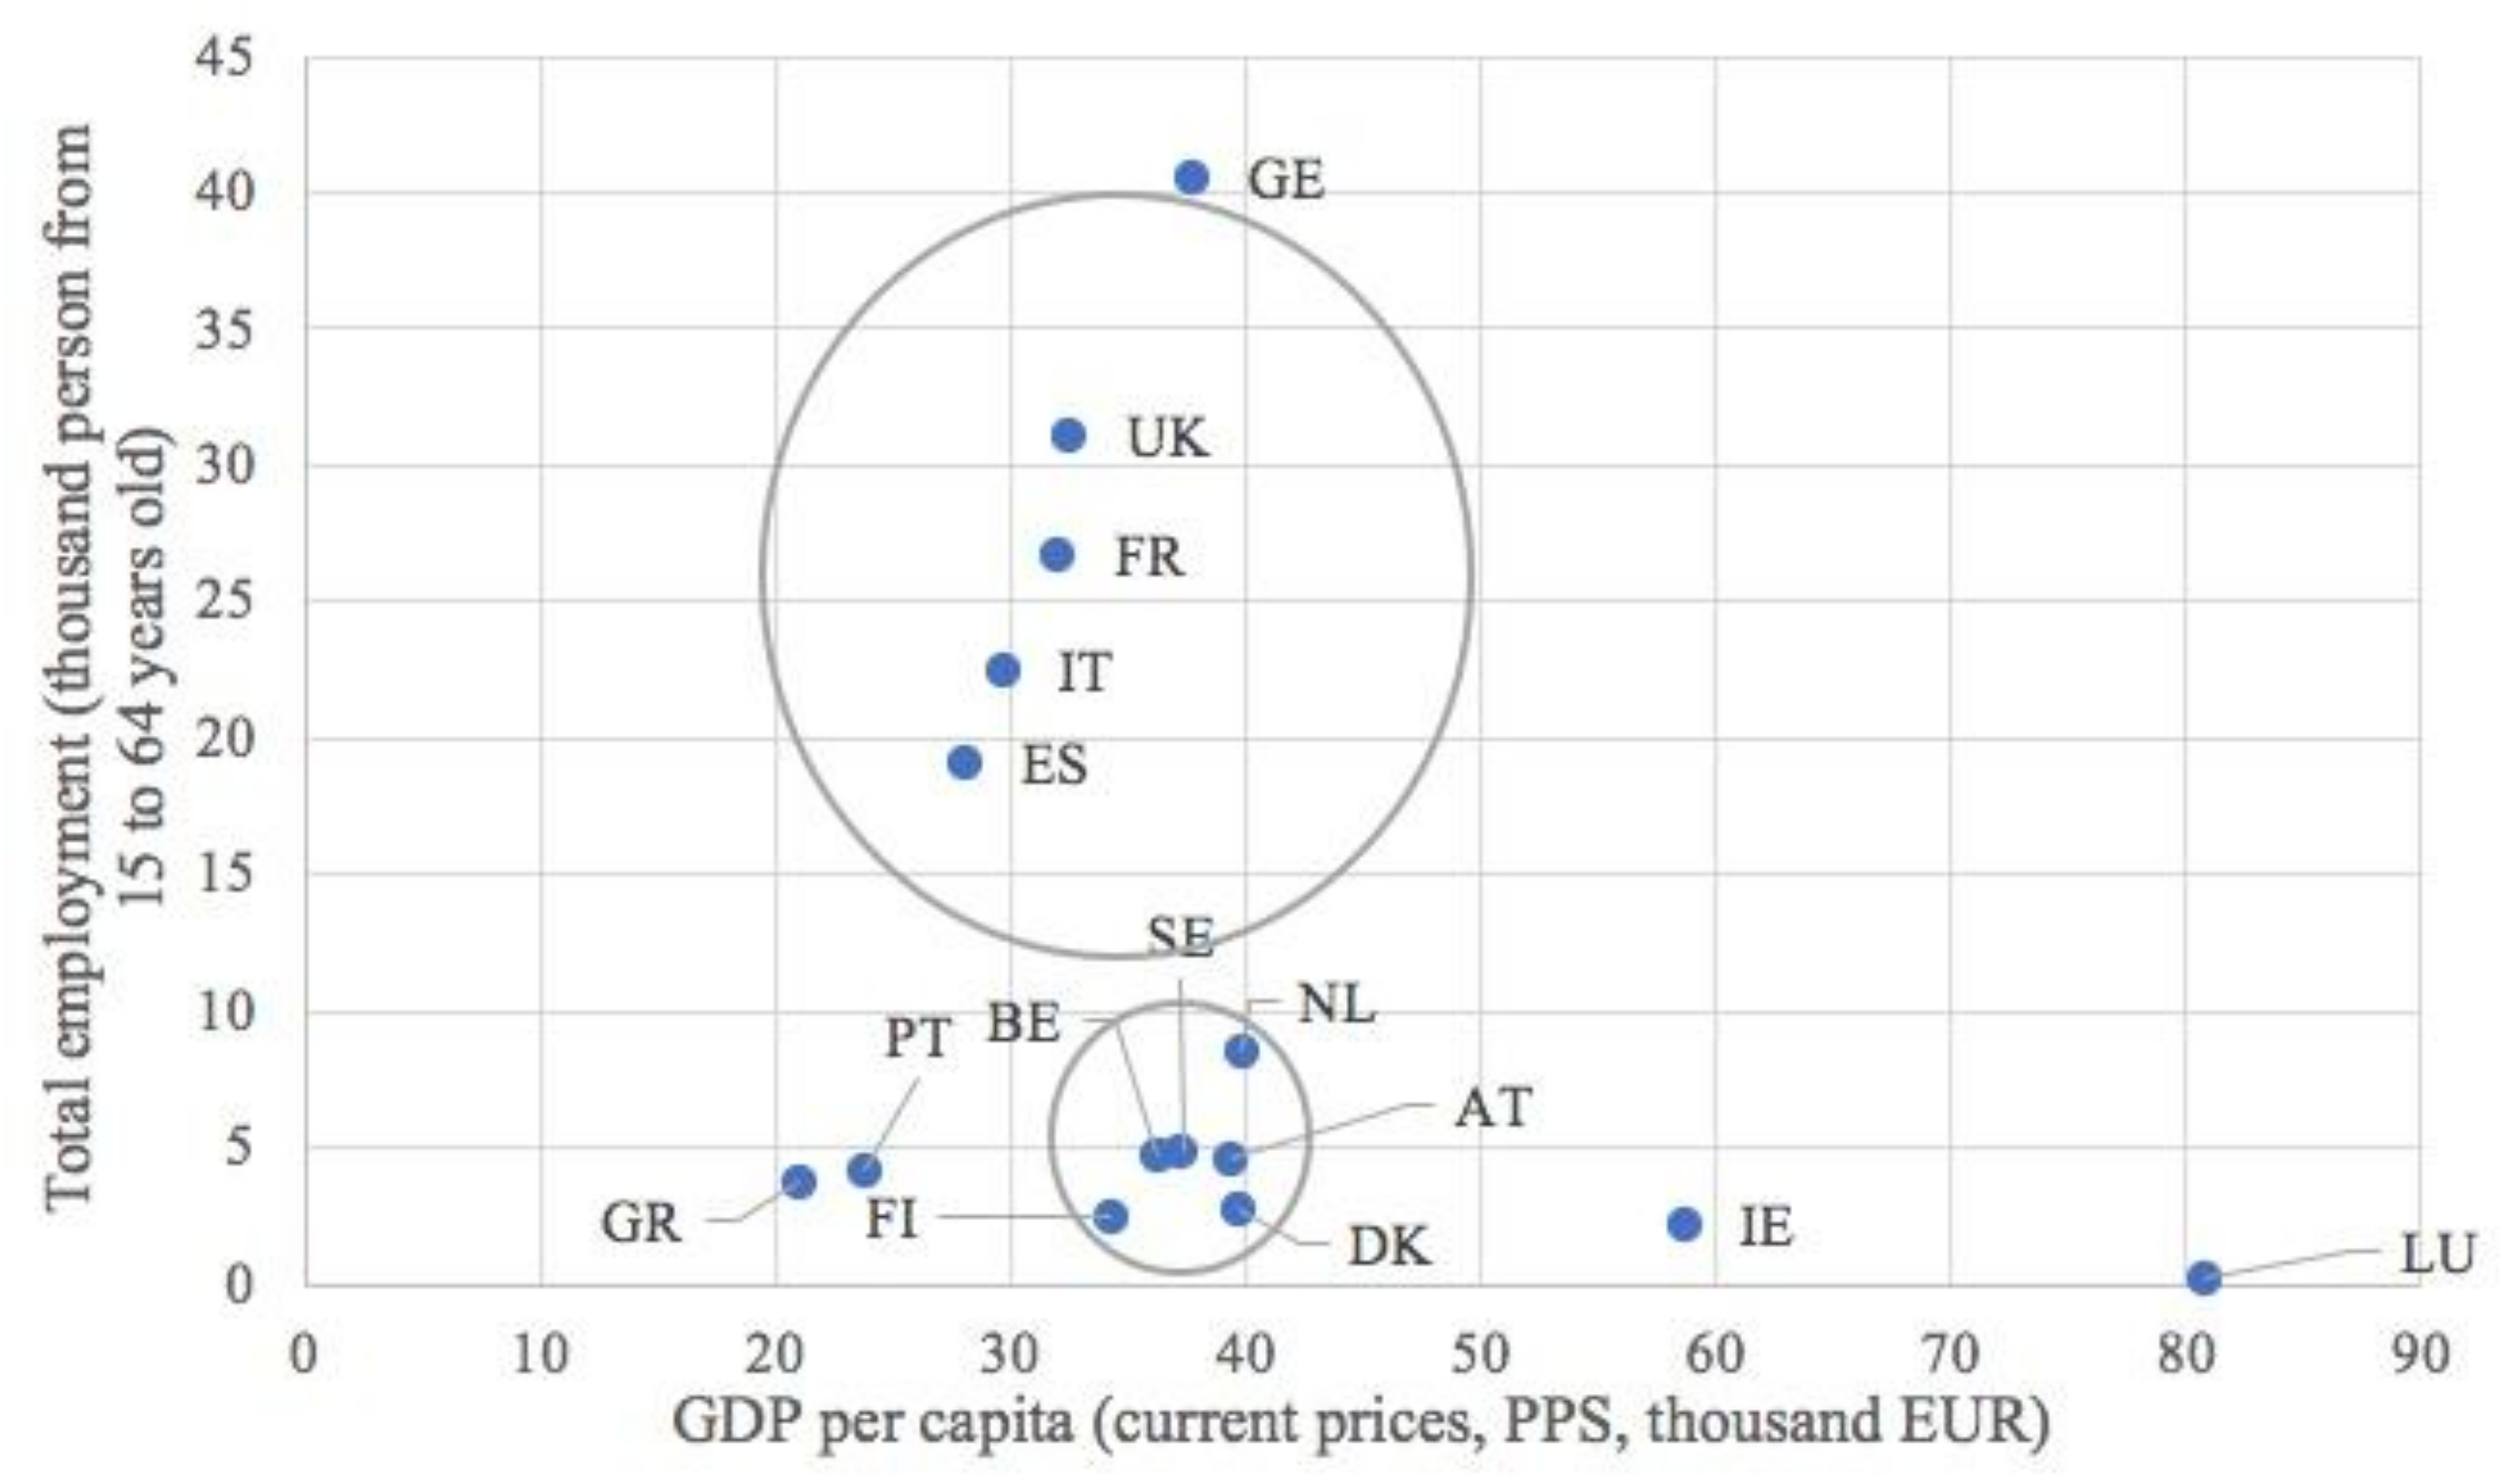 Economic efficiency - Wikipedia - wikipedia/wiki/Economic_efficiency 1/  Economic efficiency In - Studocu